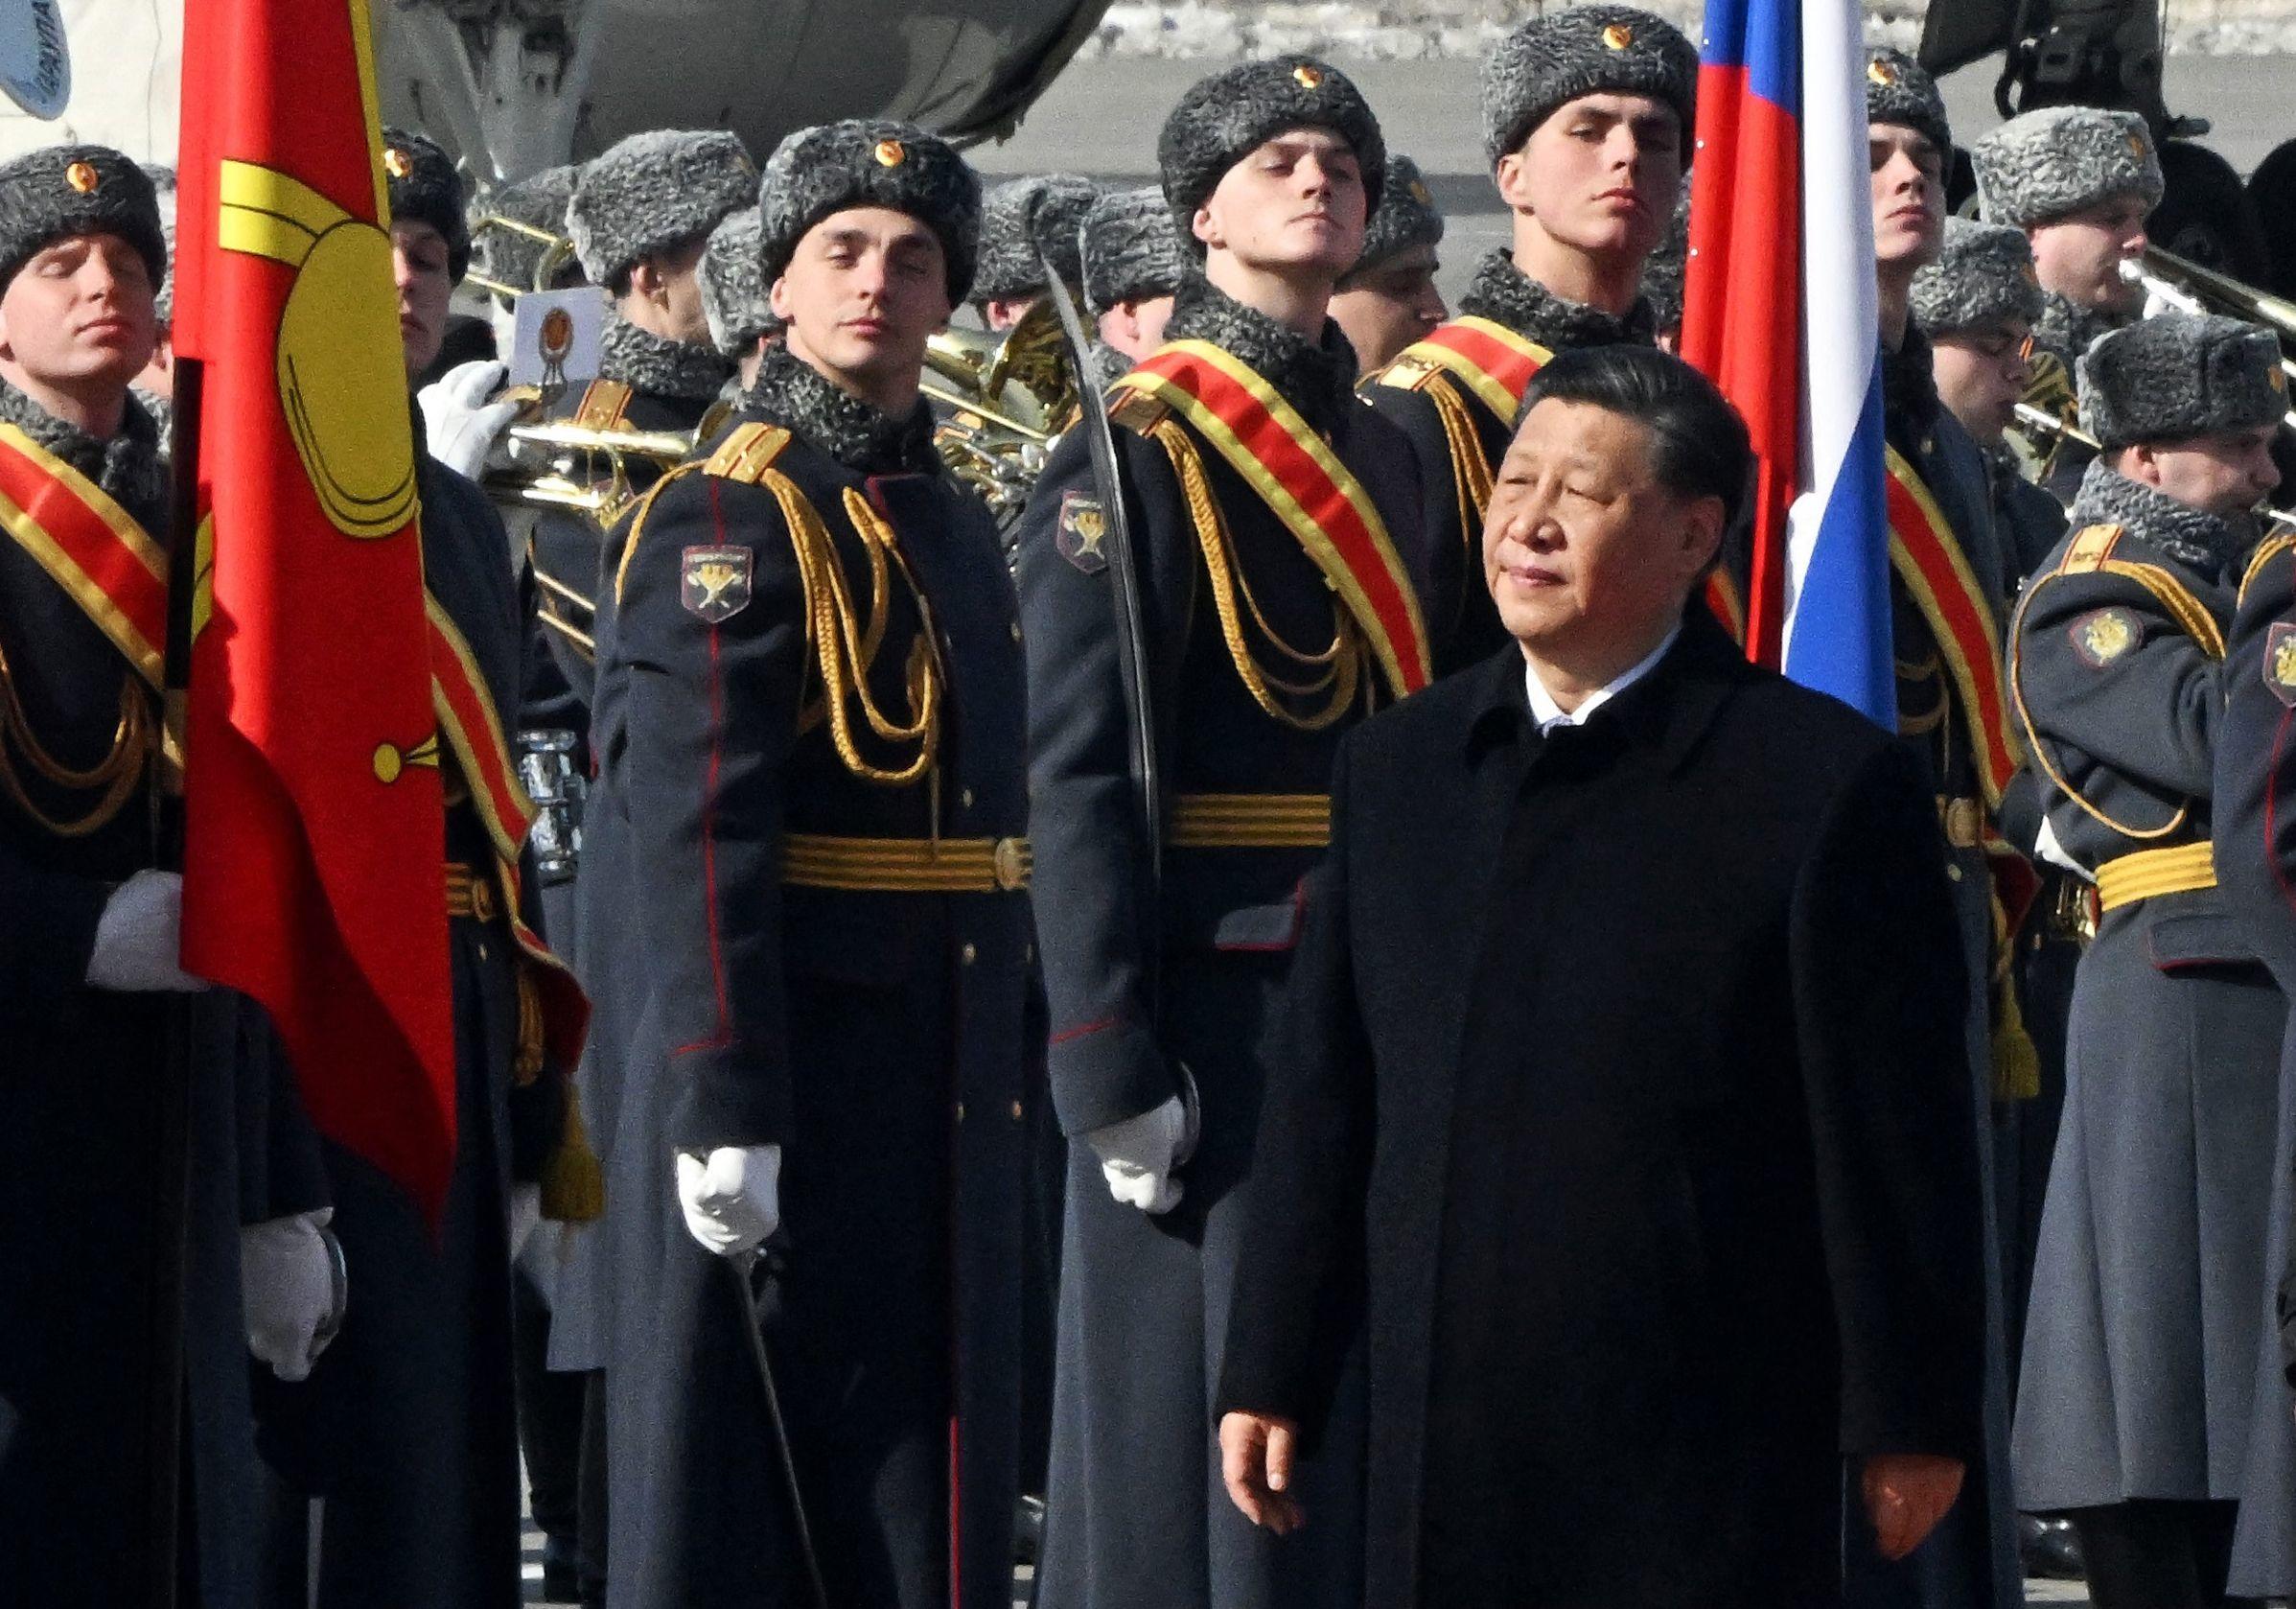 Moscou (Russie), lundi. Le président chinois, Xi Jinping, passe en revue des gardes russes d'honneur. AFP/Kommersant Photo/Anatoliy Zhdanov